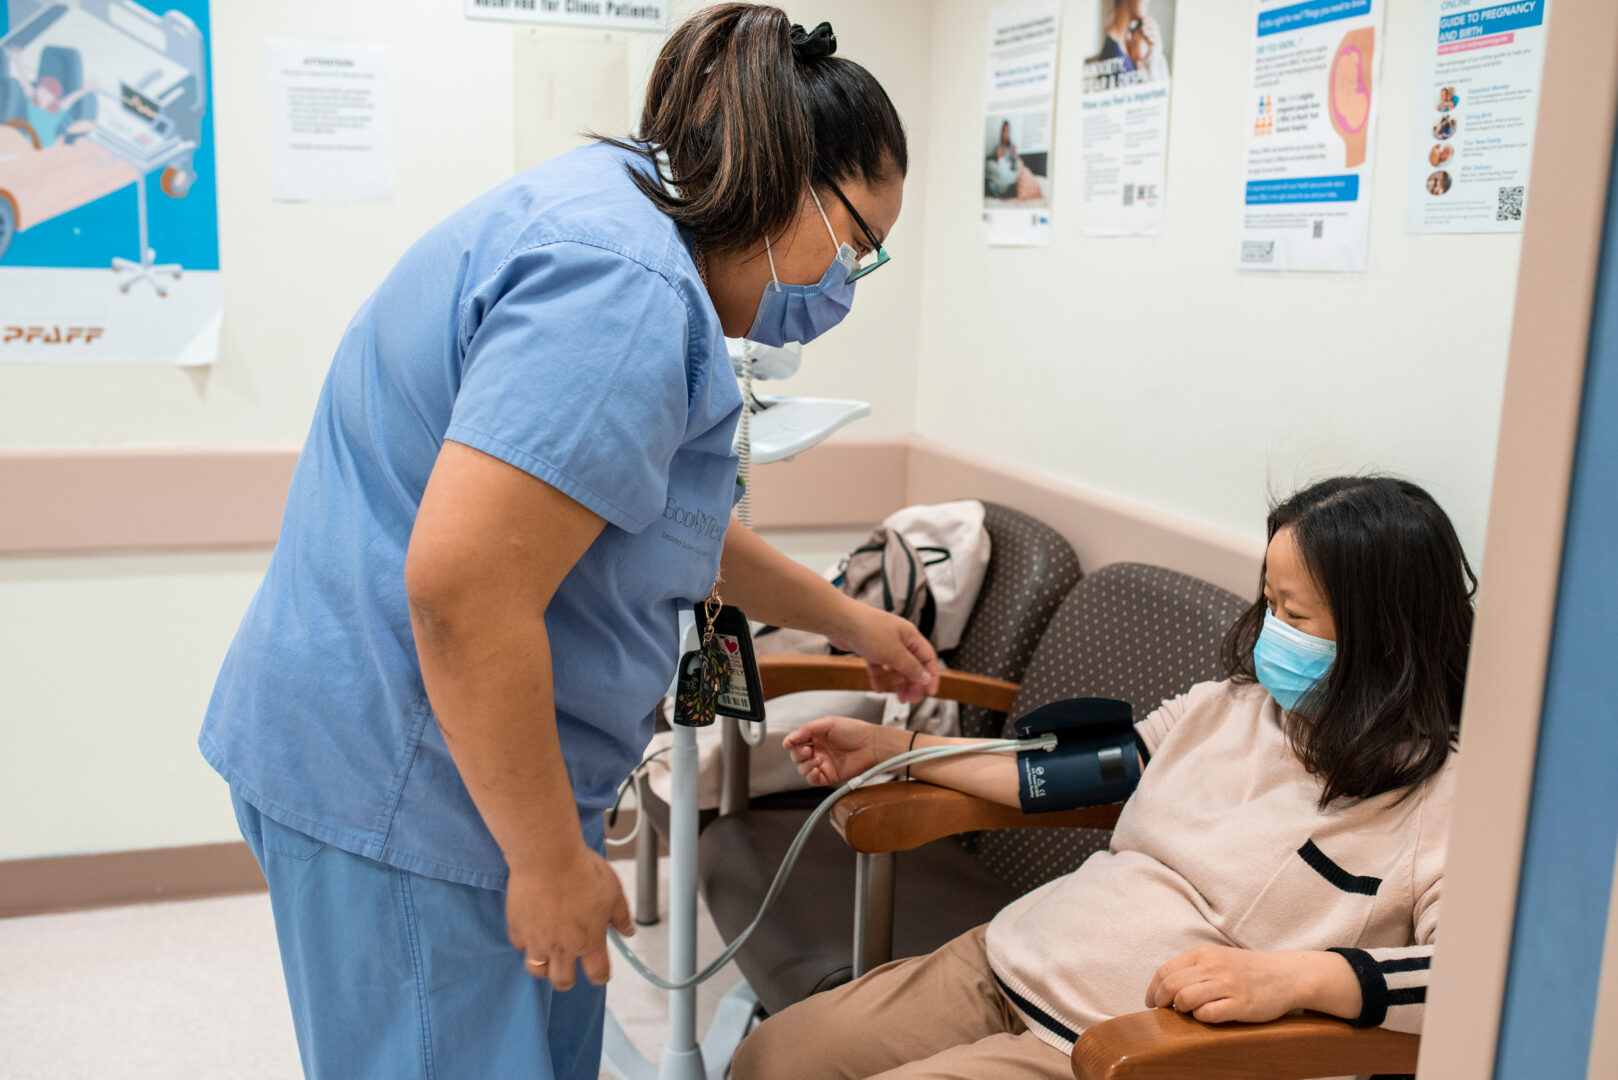 A nurse in a blue uniform checks a patient's blood pressure.